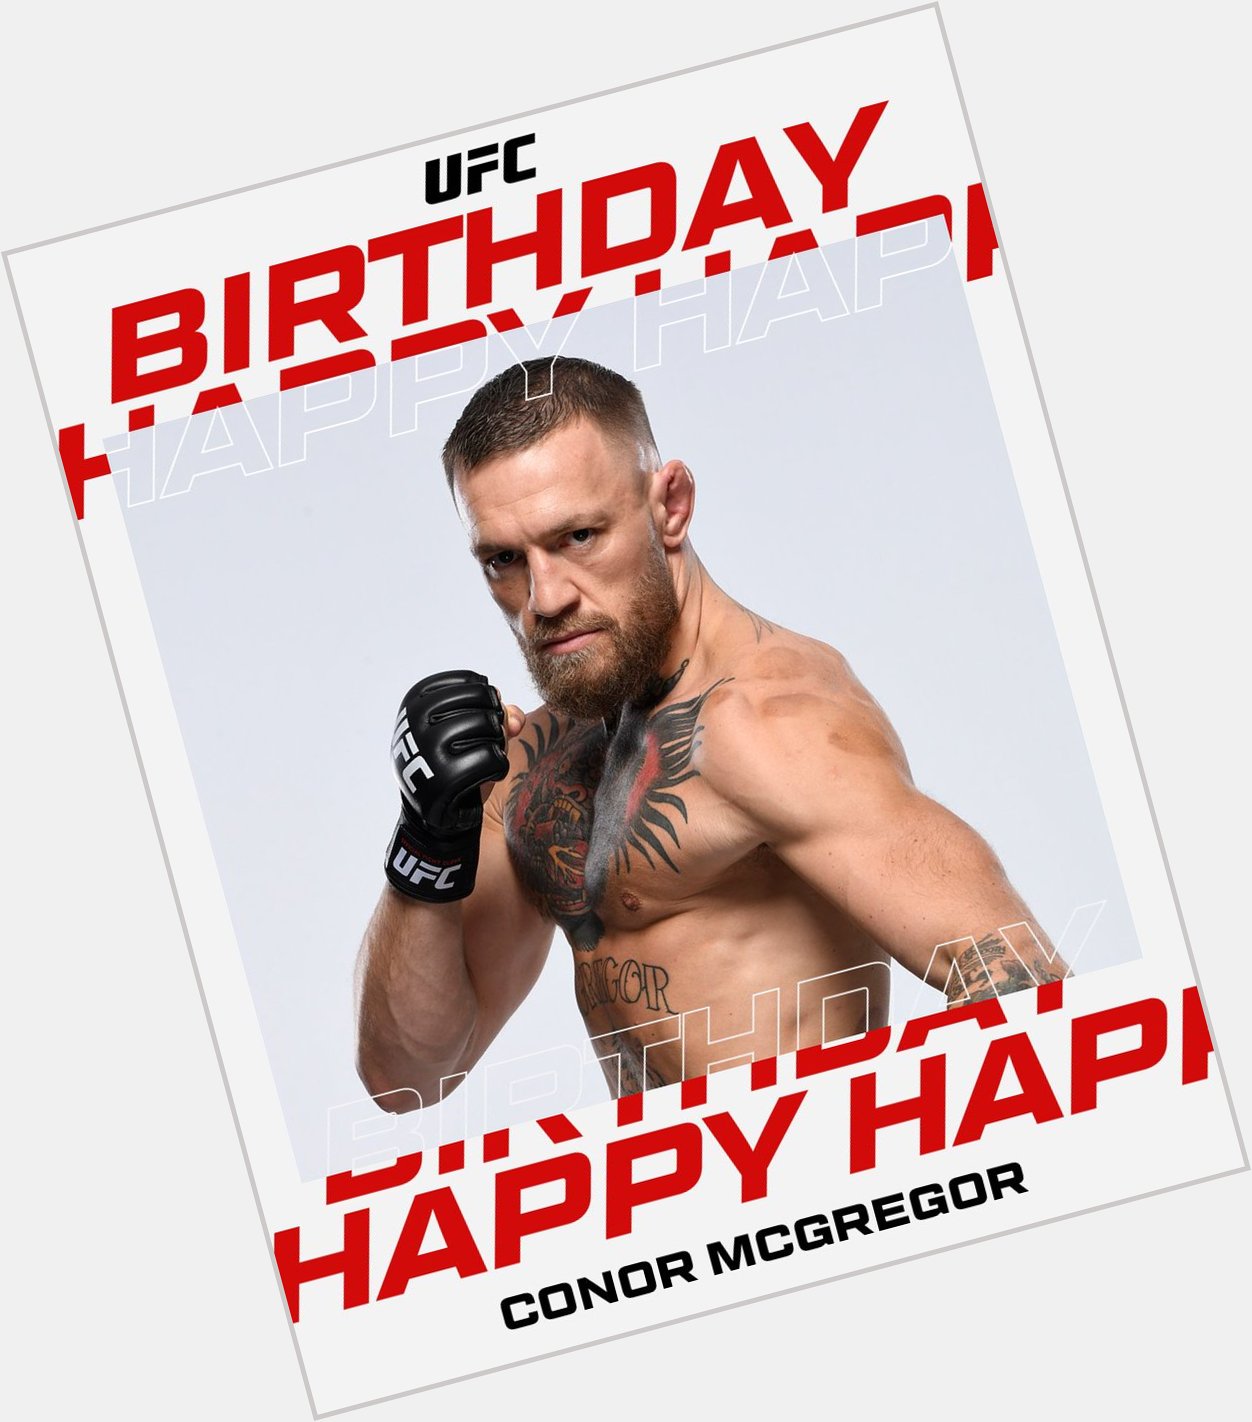 Happy birthday Conor McGregor!

